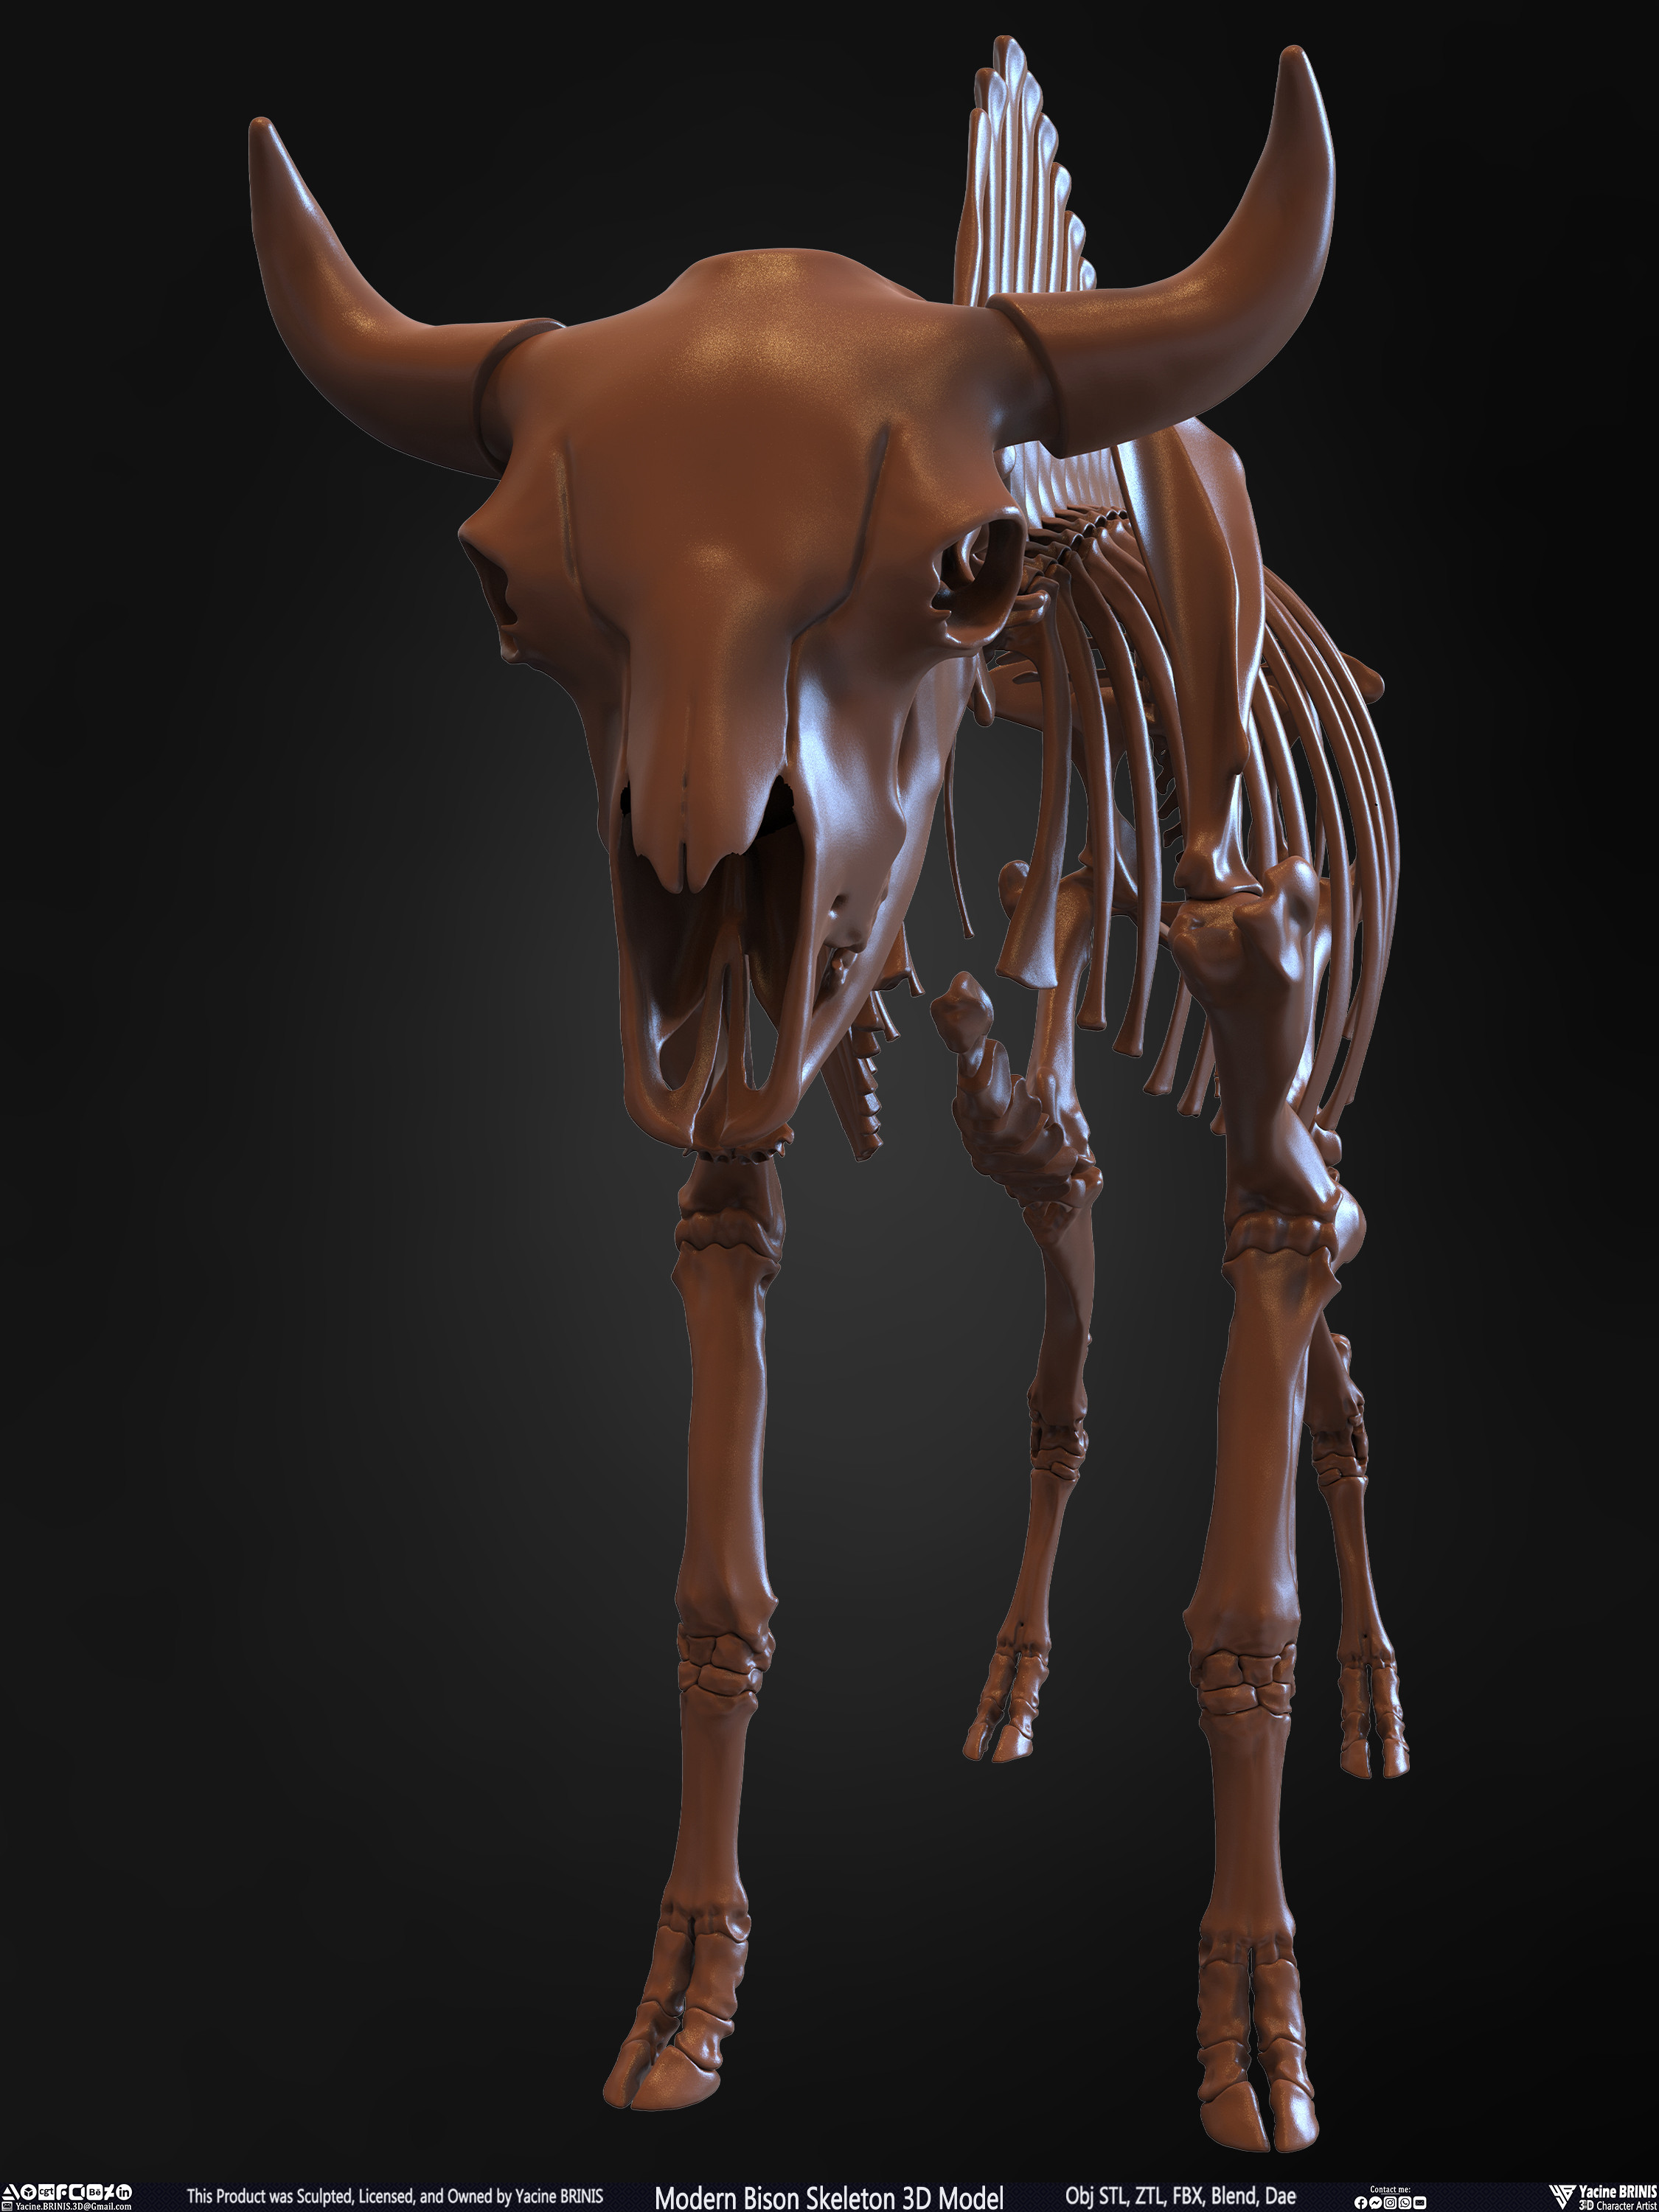 Modern Bison Skeleton 3D Model Sculpted by Yacine BRINIS Set 010